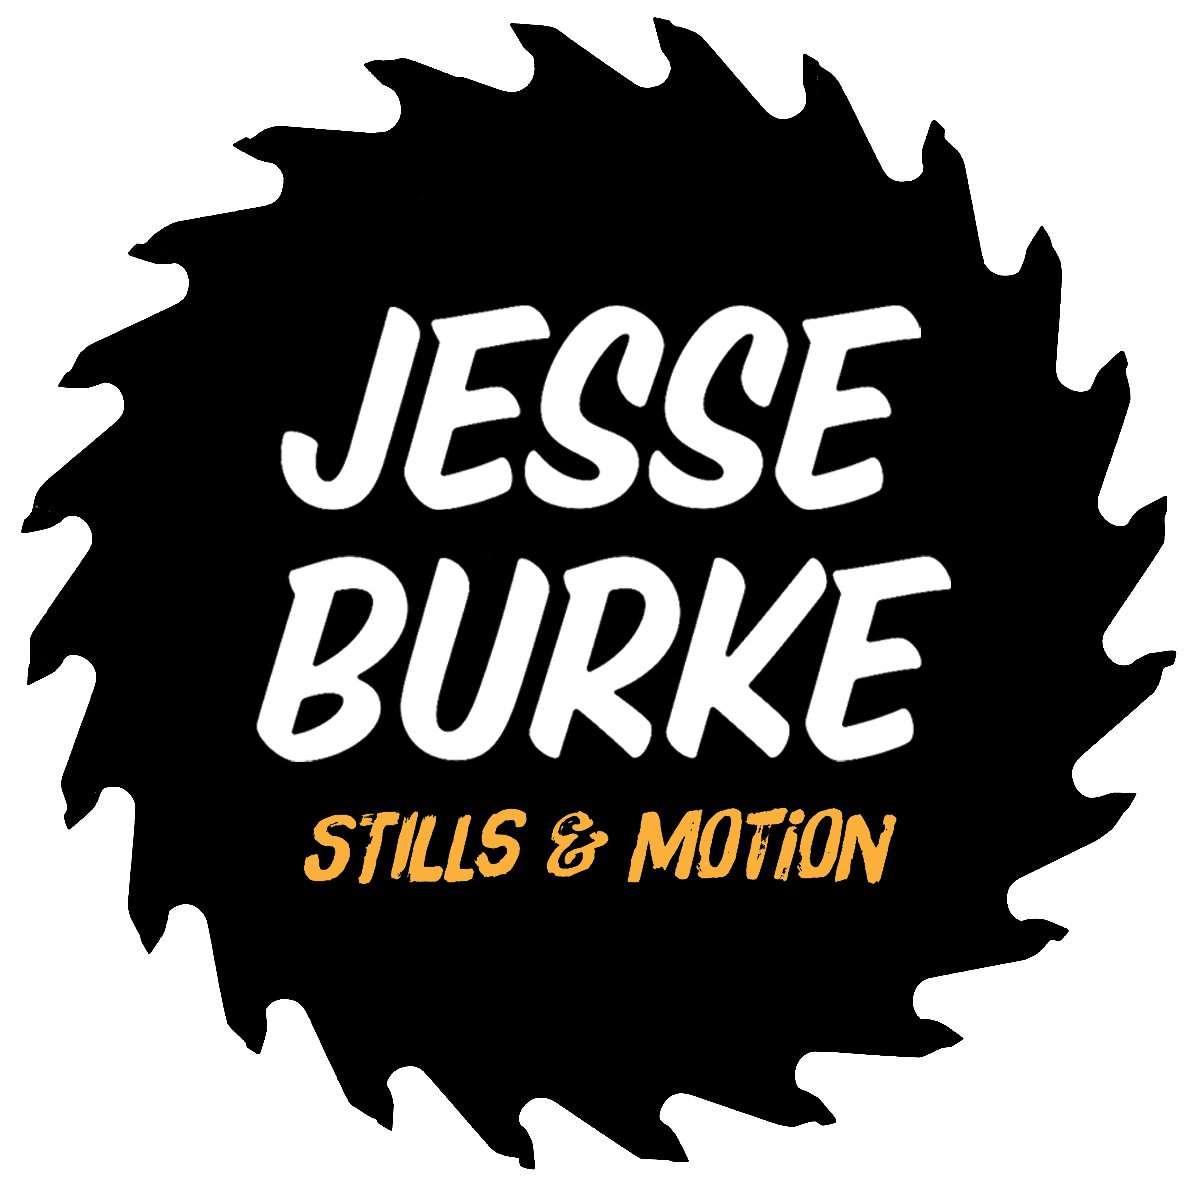 JESSE BURKE - STORYTELLER